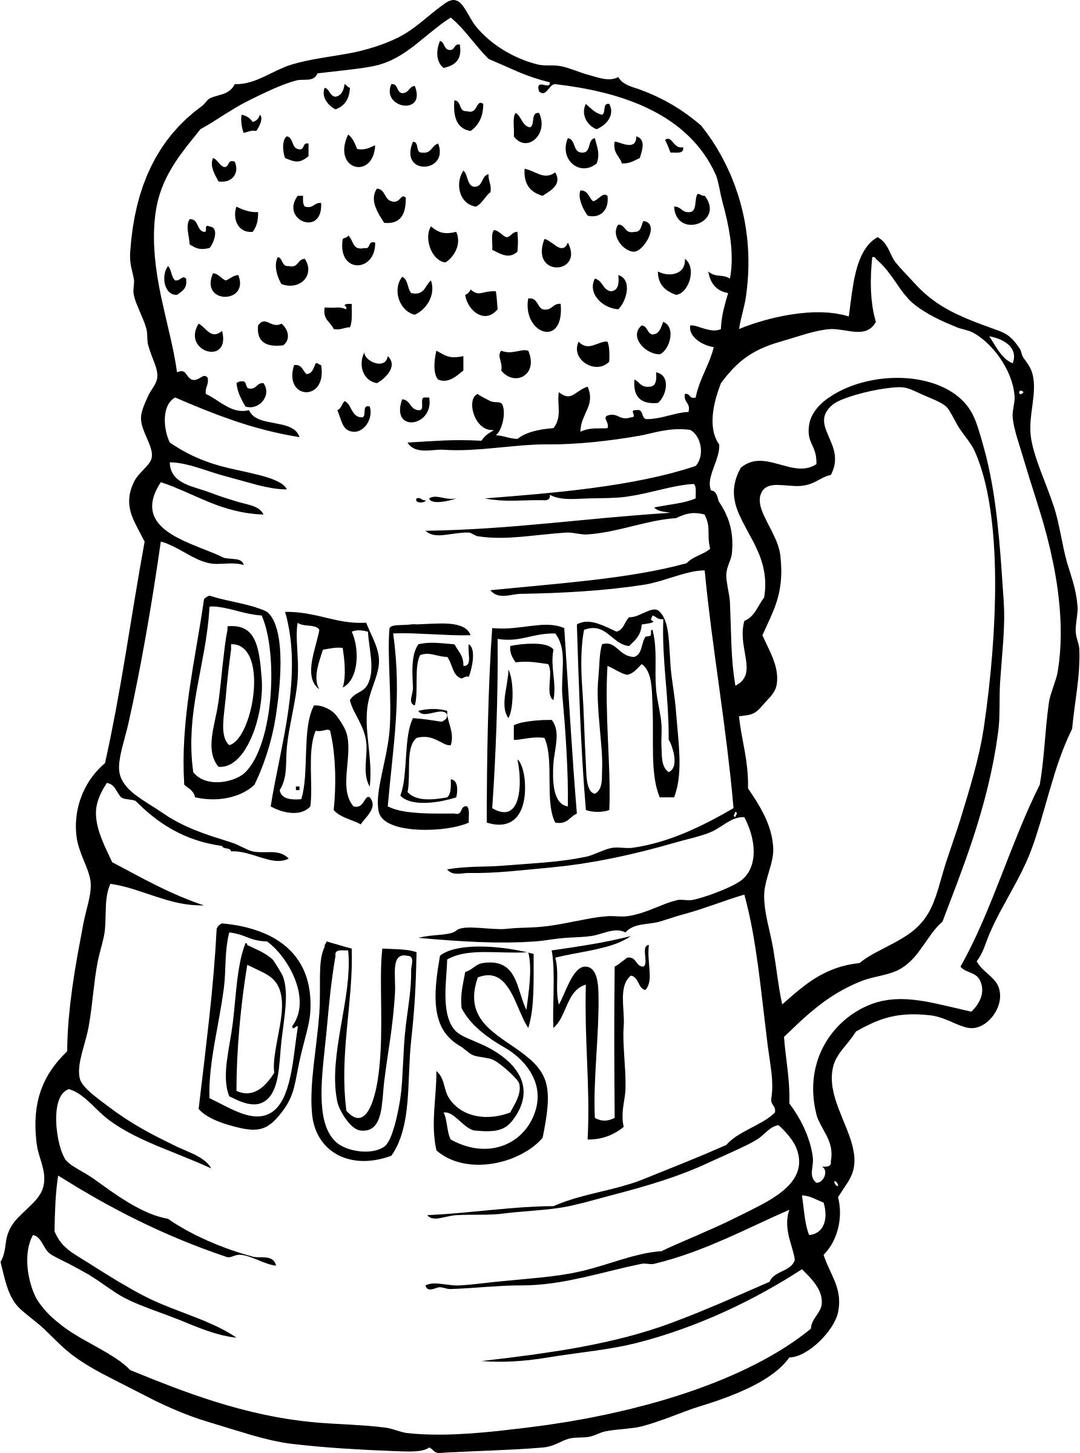 dream dust png transparent